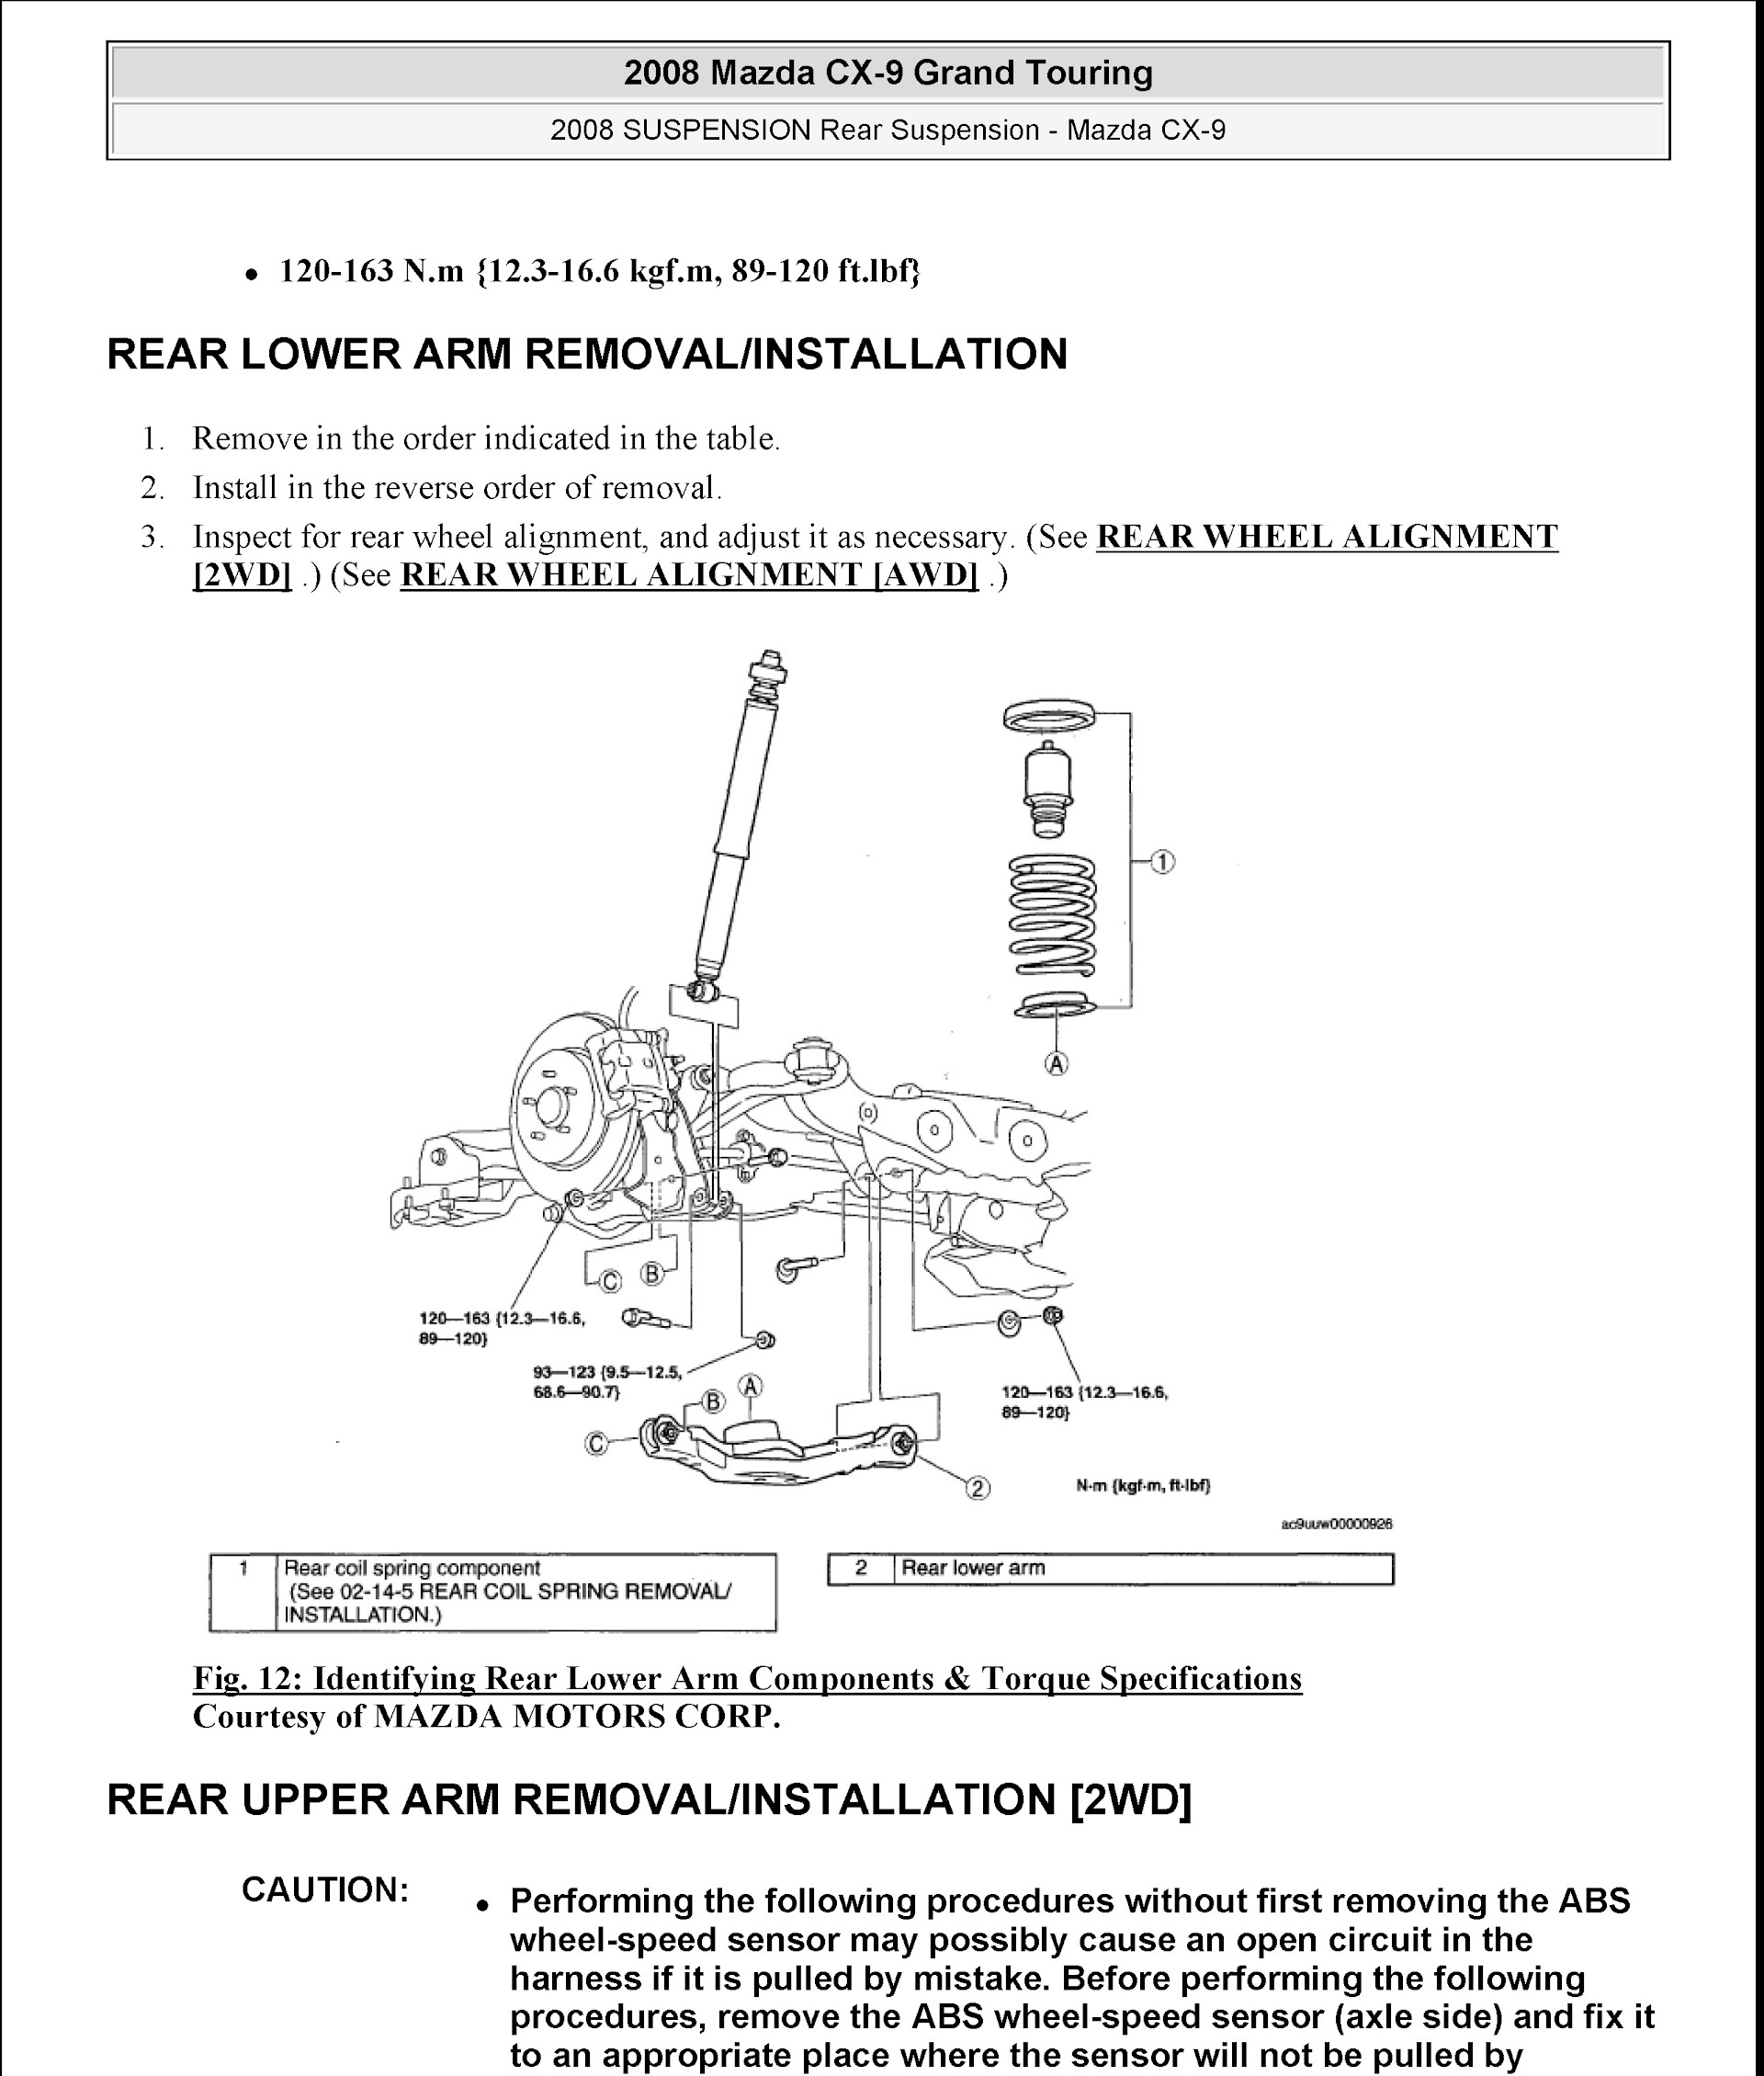 Download 2008 Mazda CX-9 Grand Touring Service Repair Manual